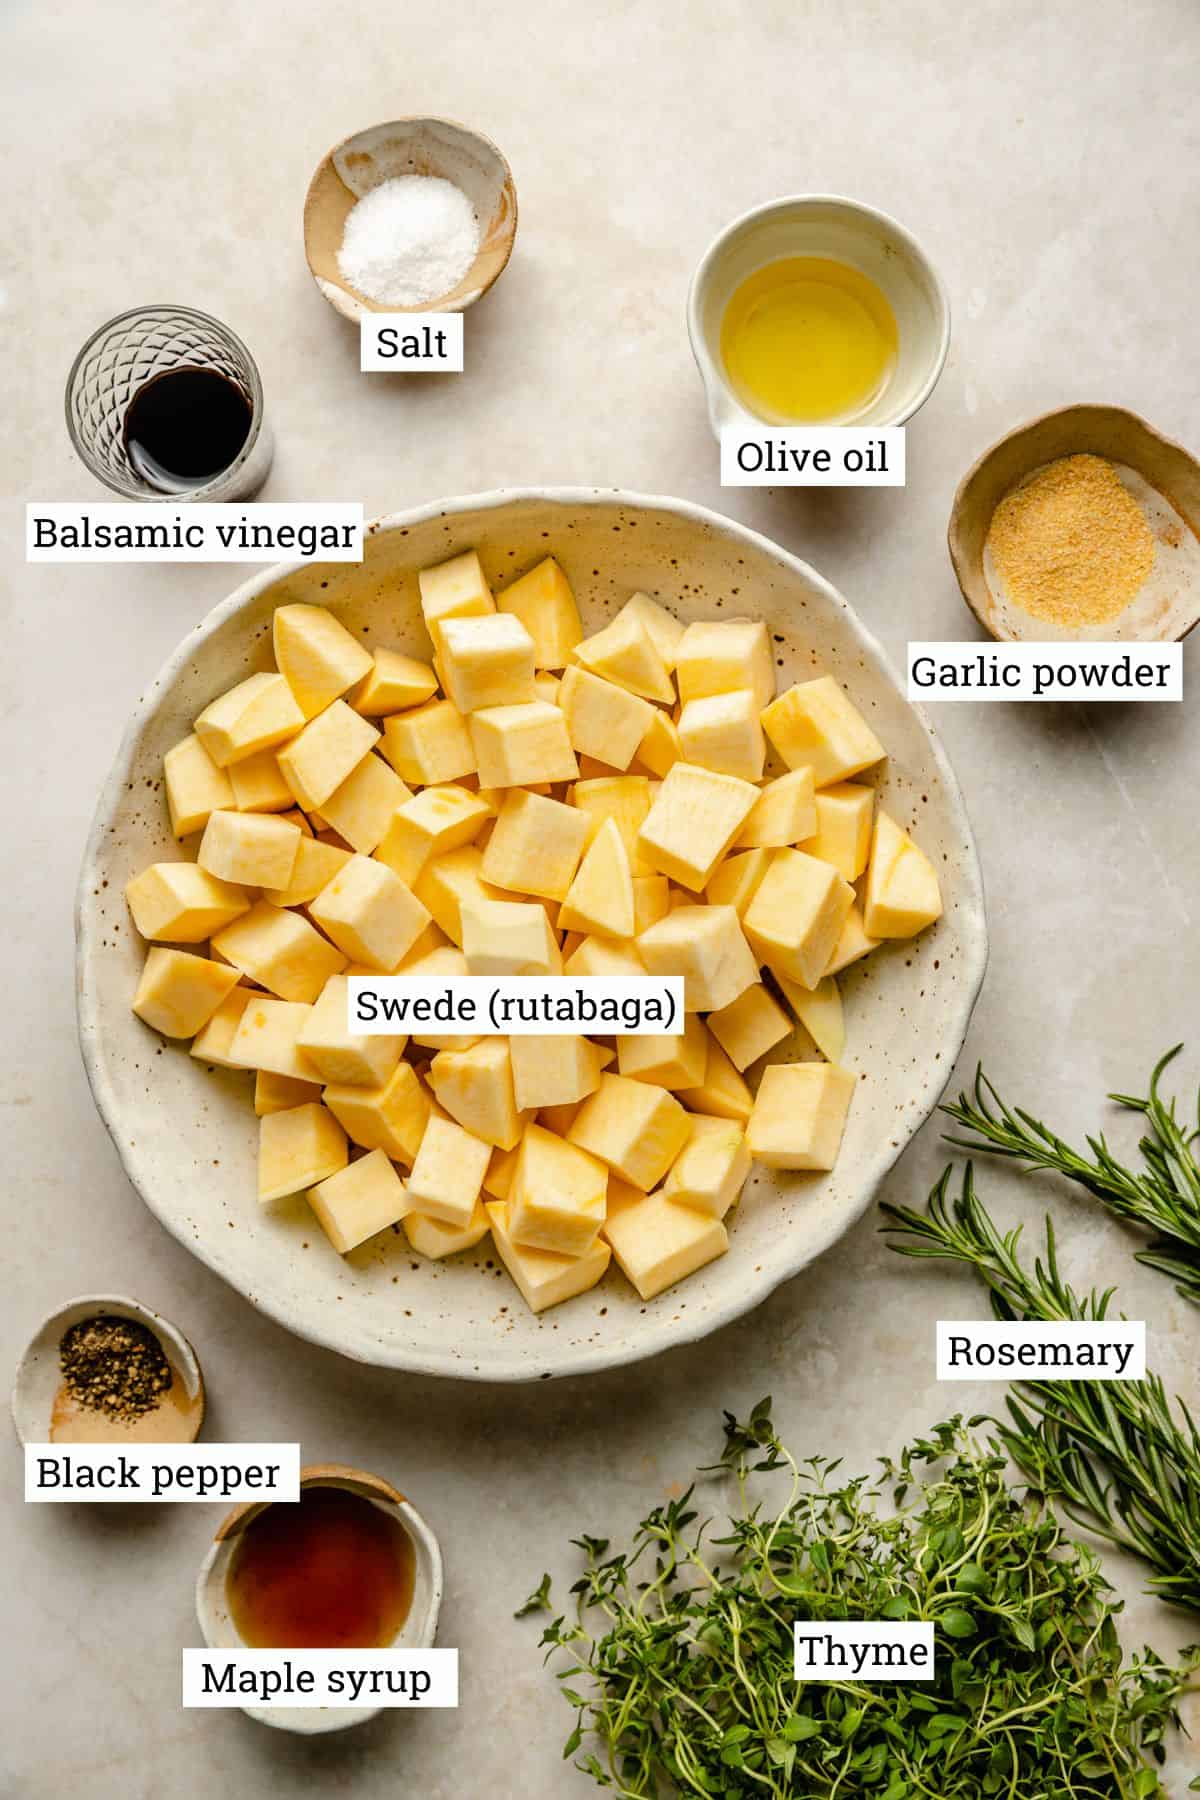 Ingredients including swede, herbs, vinegar, garlic powder and seasonings.